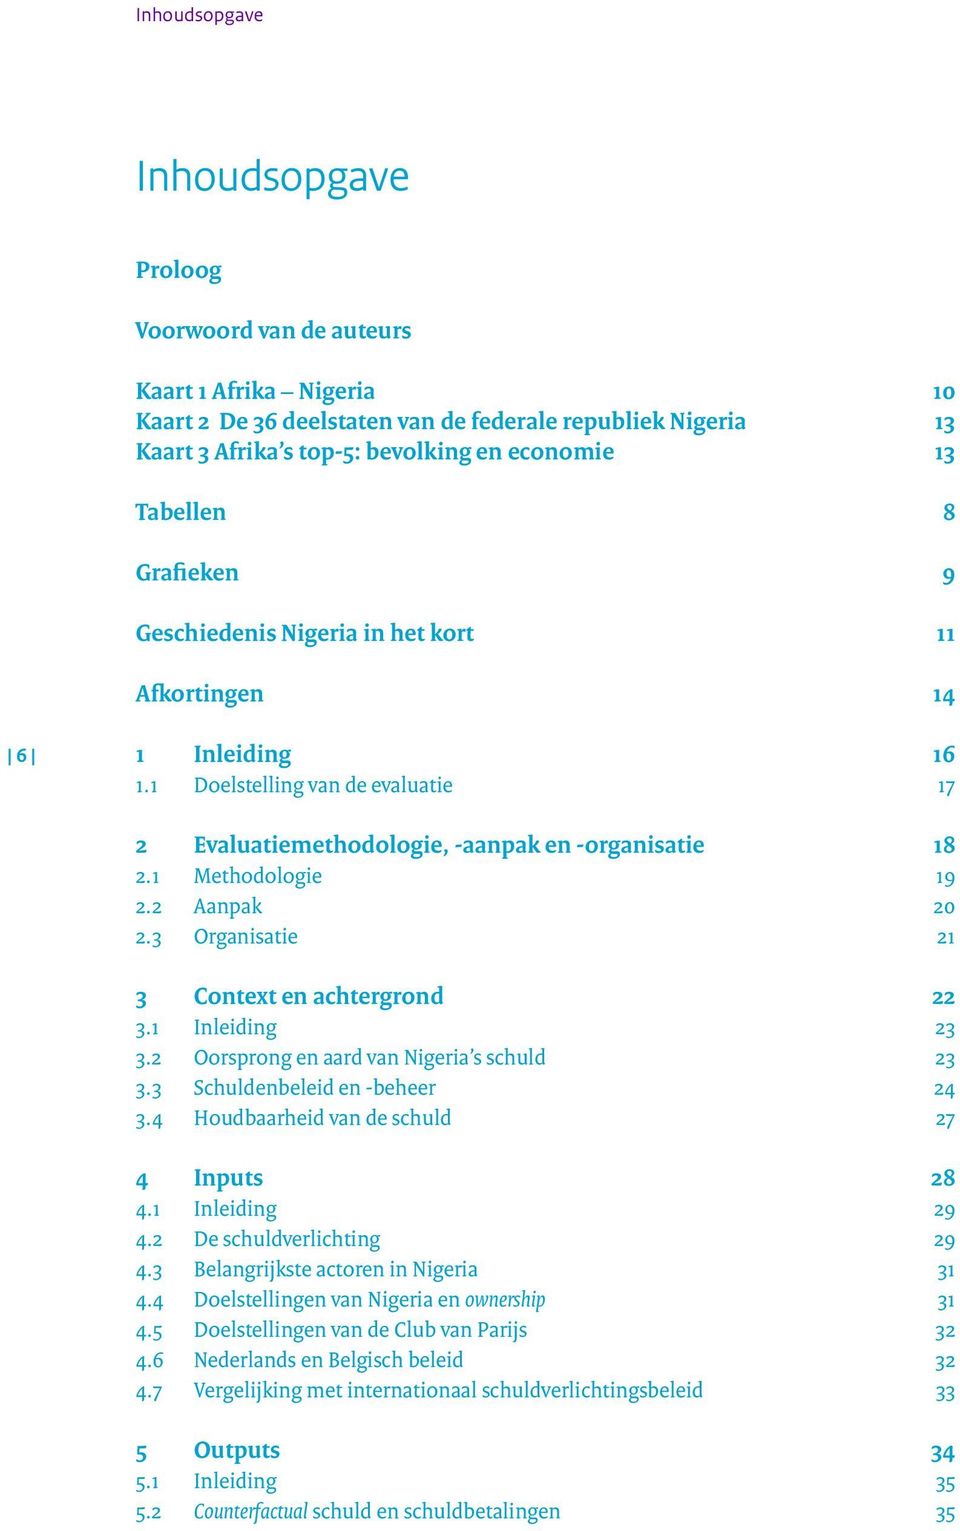 1 Methodologie 19 2.2 Aanpak 20 2.3 Organisatie 21 3 Context en achtergrond 22 3.1 Inleiding 23 3.2 Oorsprong en aard van Nigeria s schuld 23 3.3 Schuldenbeleid en -beheer 24 3.